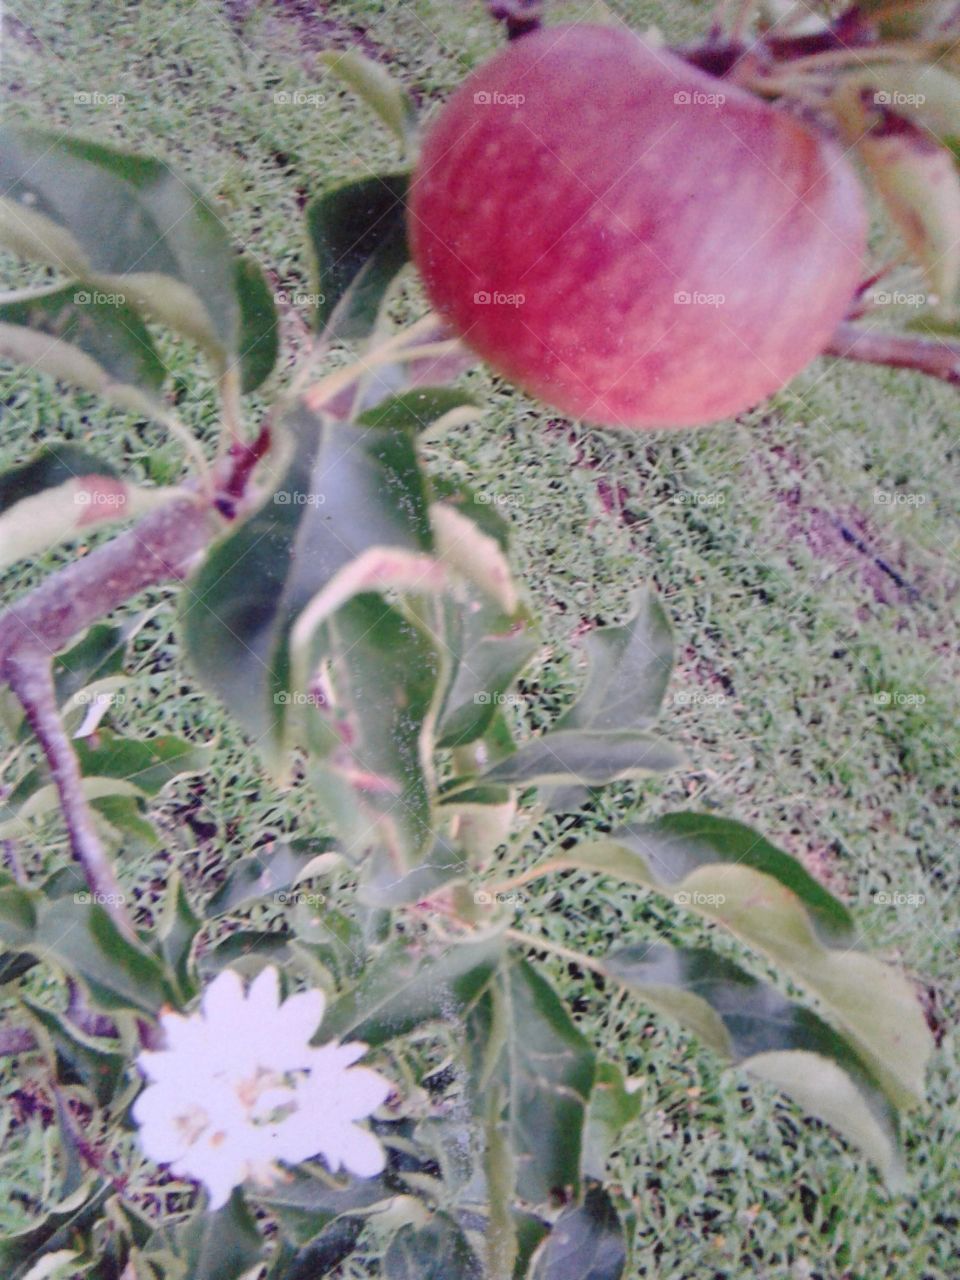 Apple fruit & flower